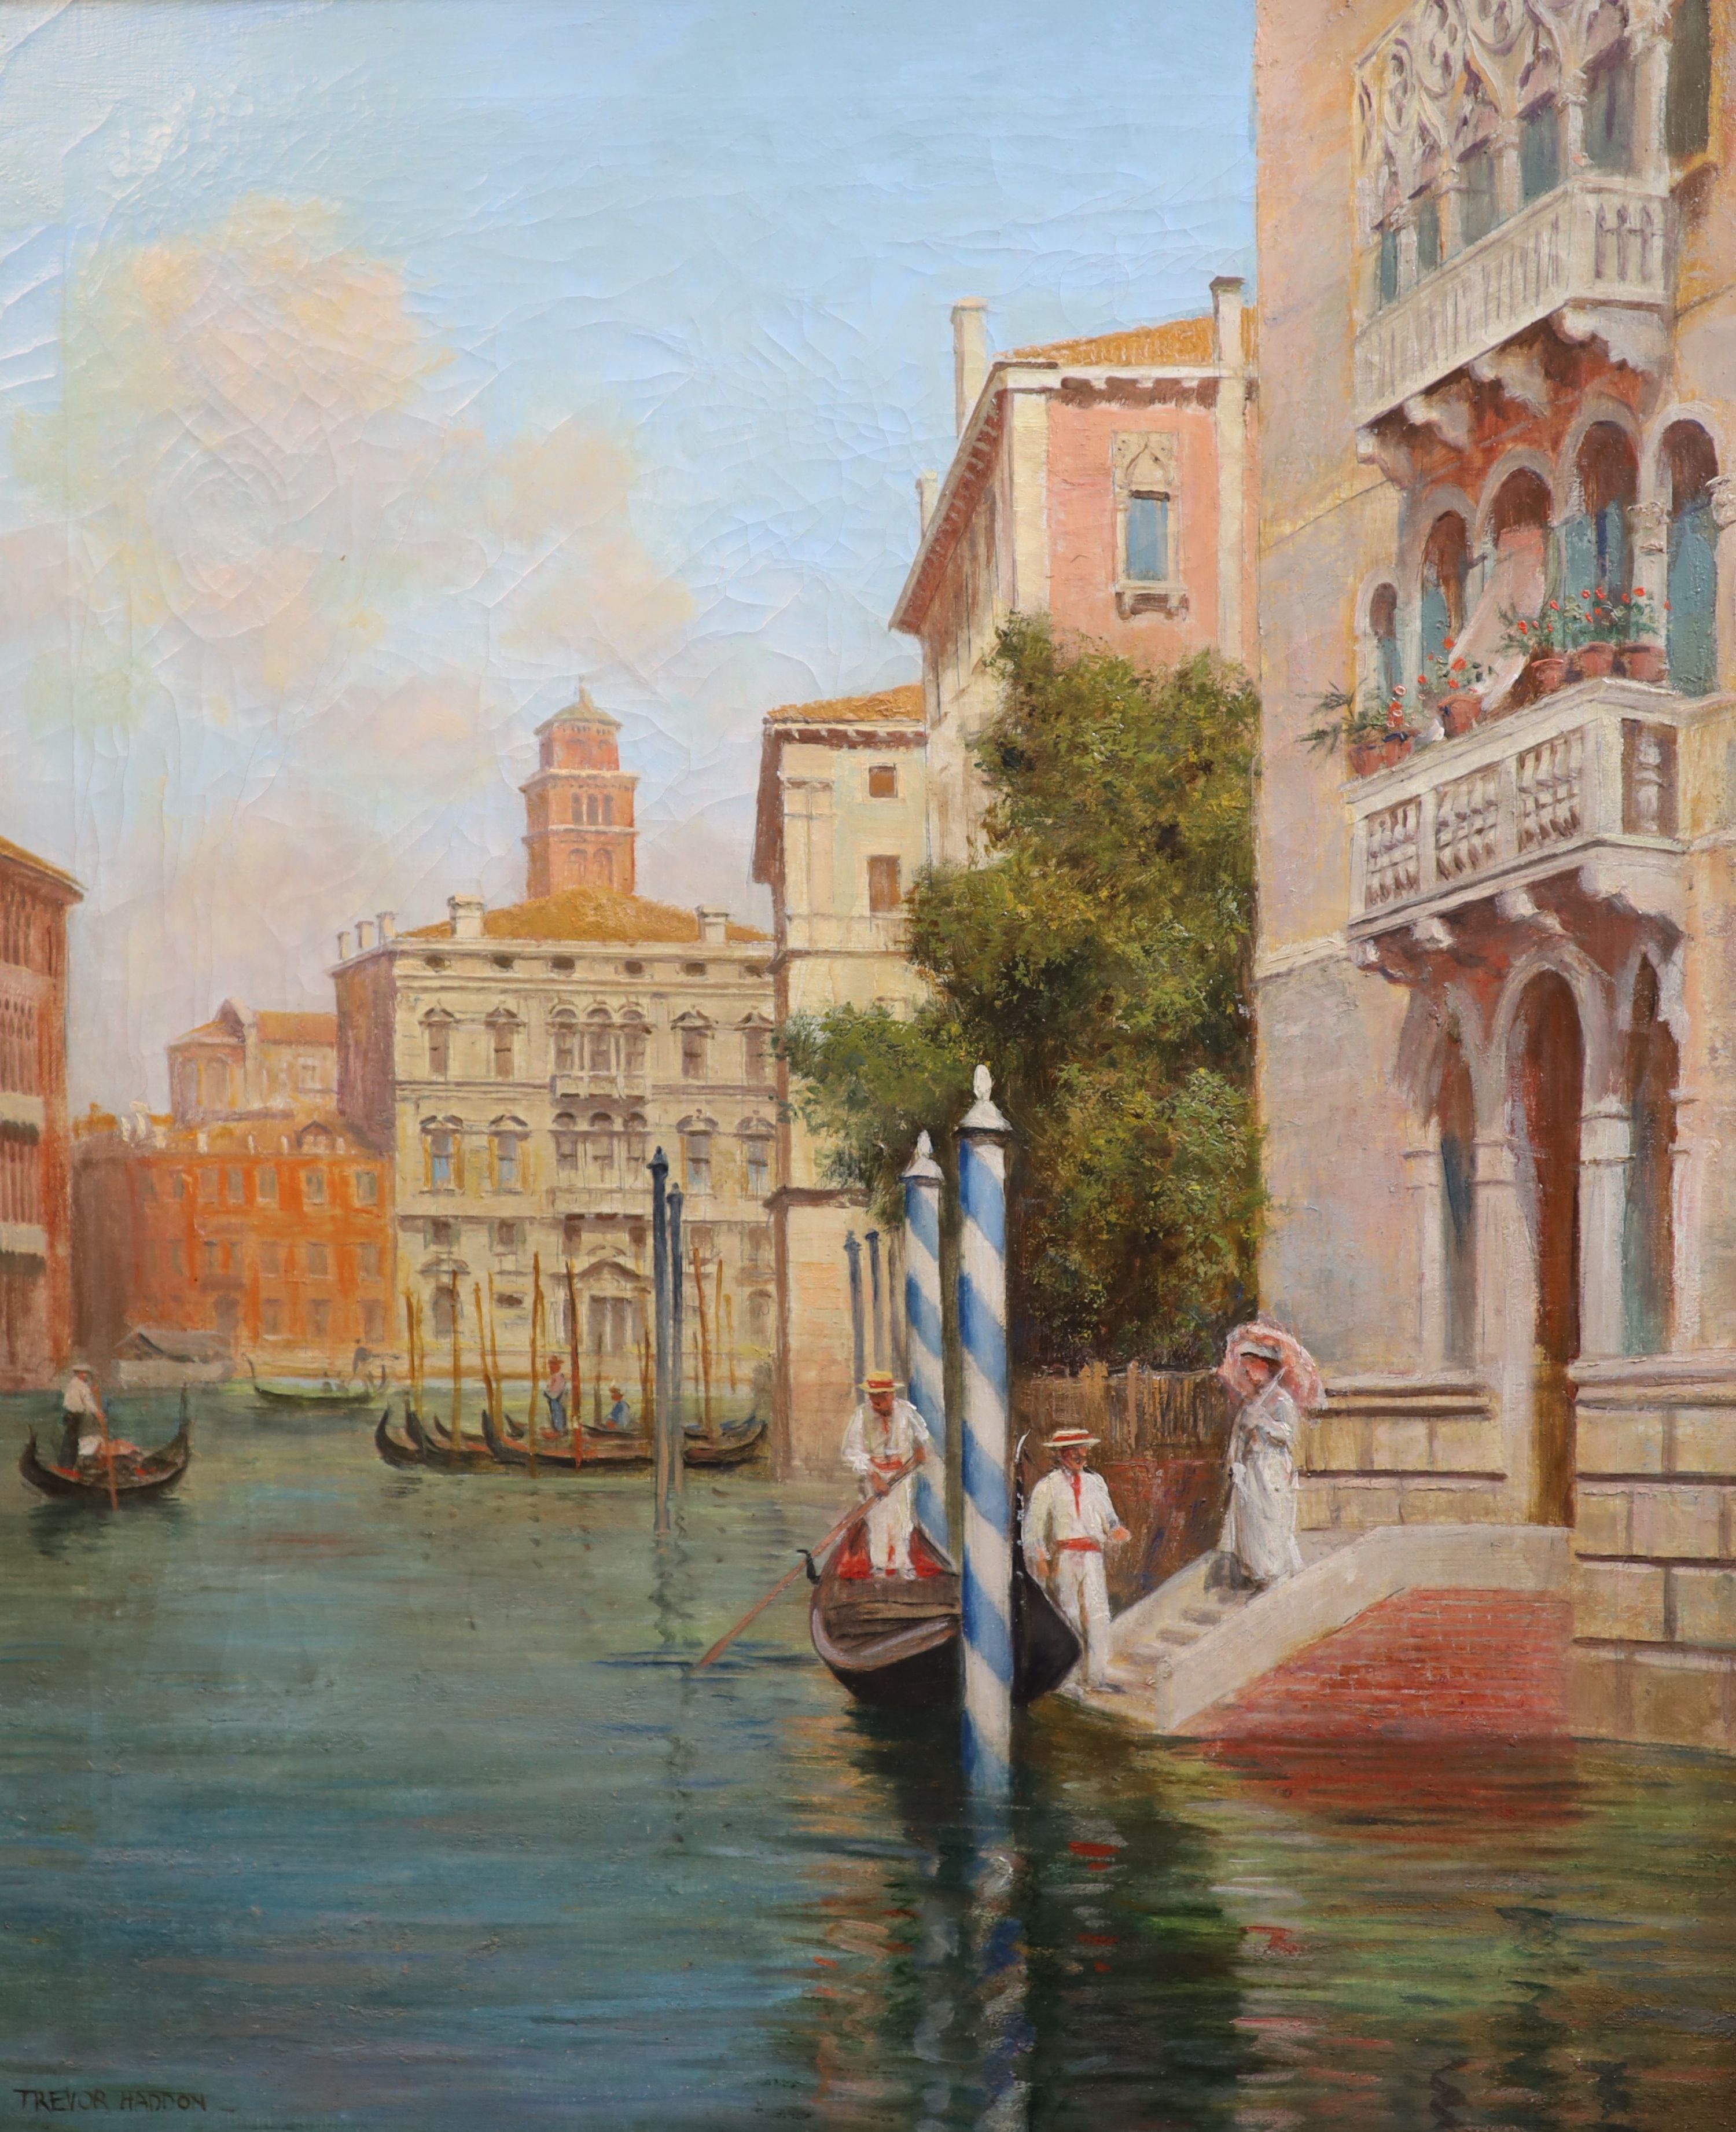 Arthur Trevor Hadden (1864-1941), Venetian canal scenes, pair of oils on canvas, 76.5 x 63c